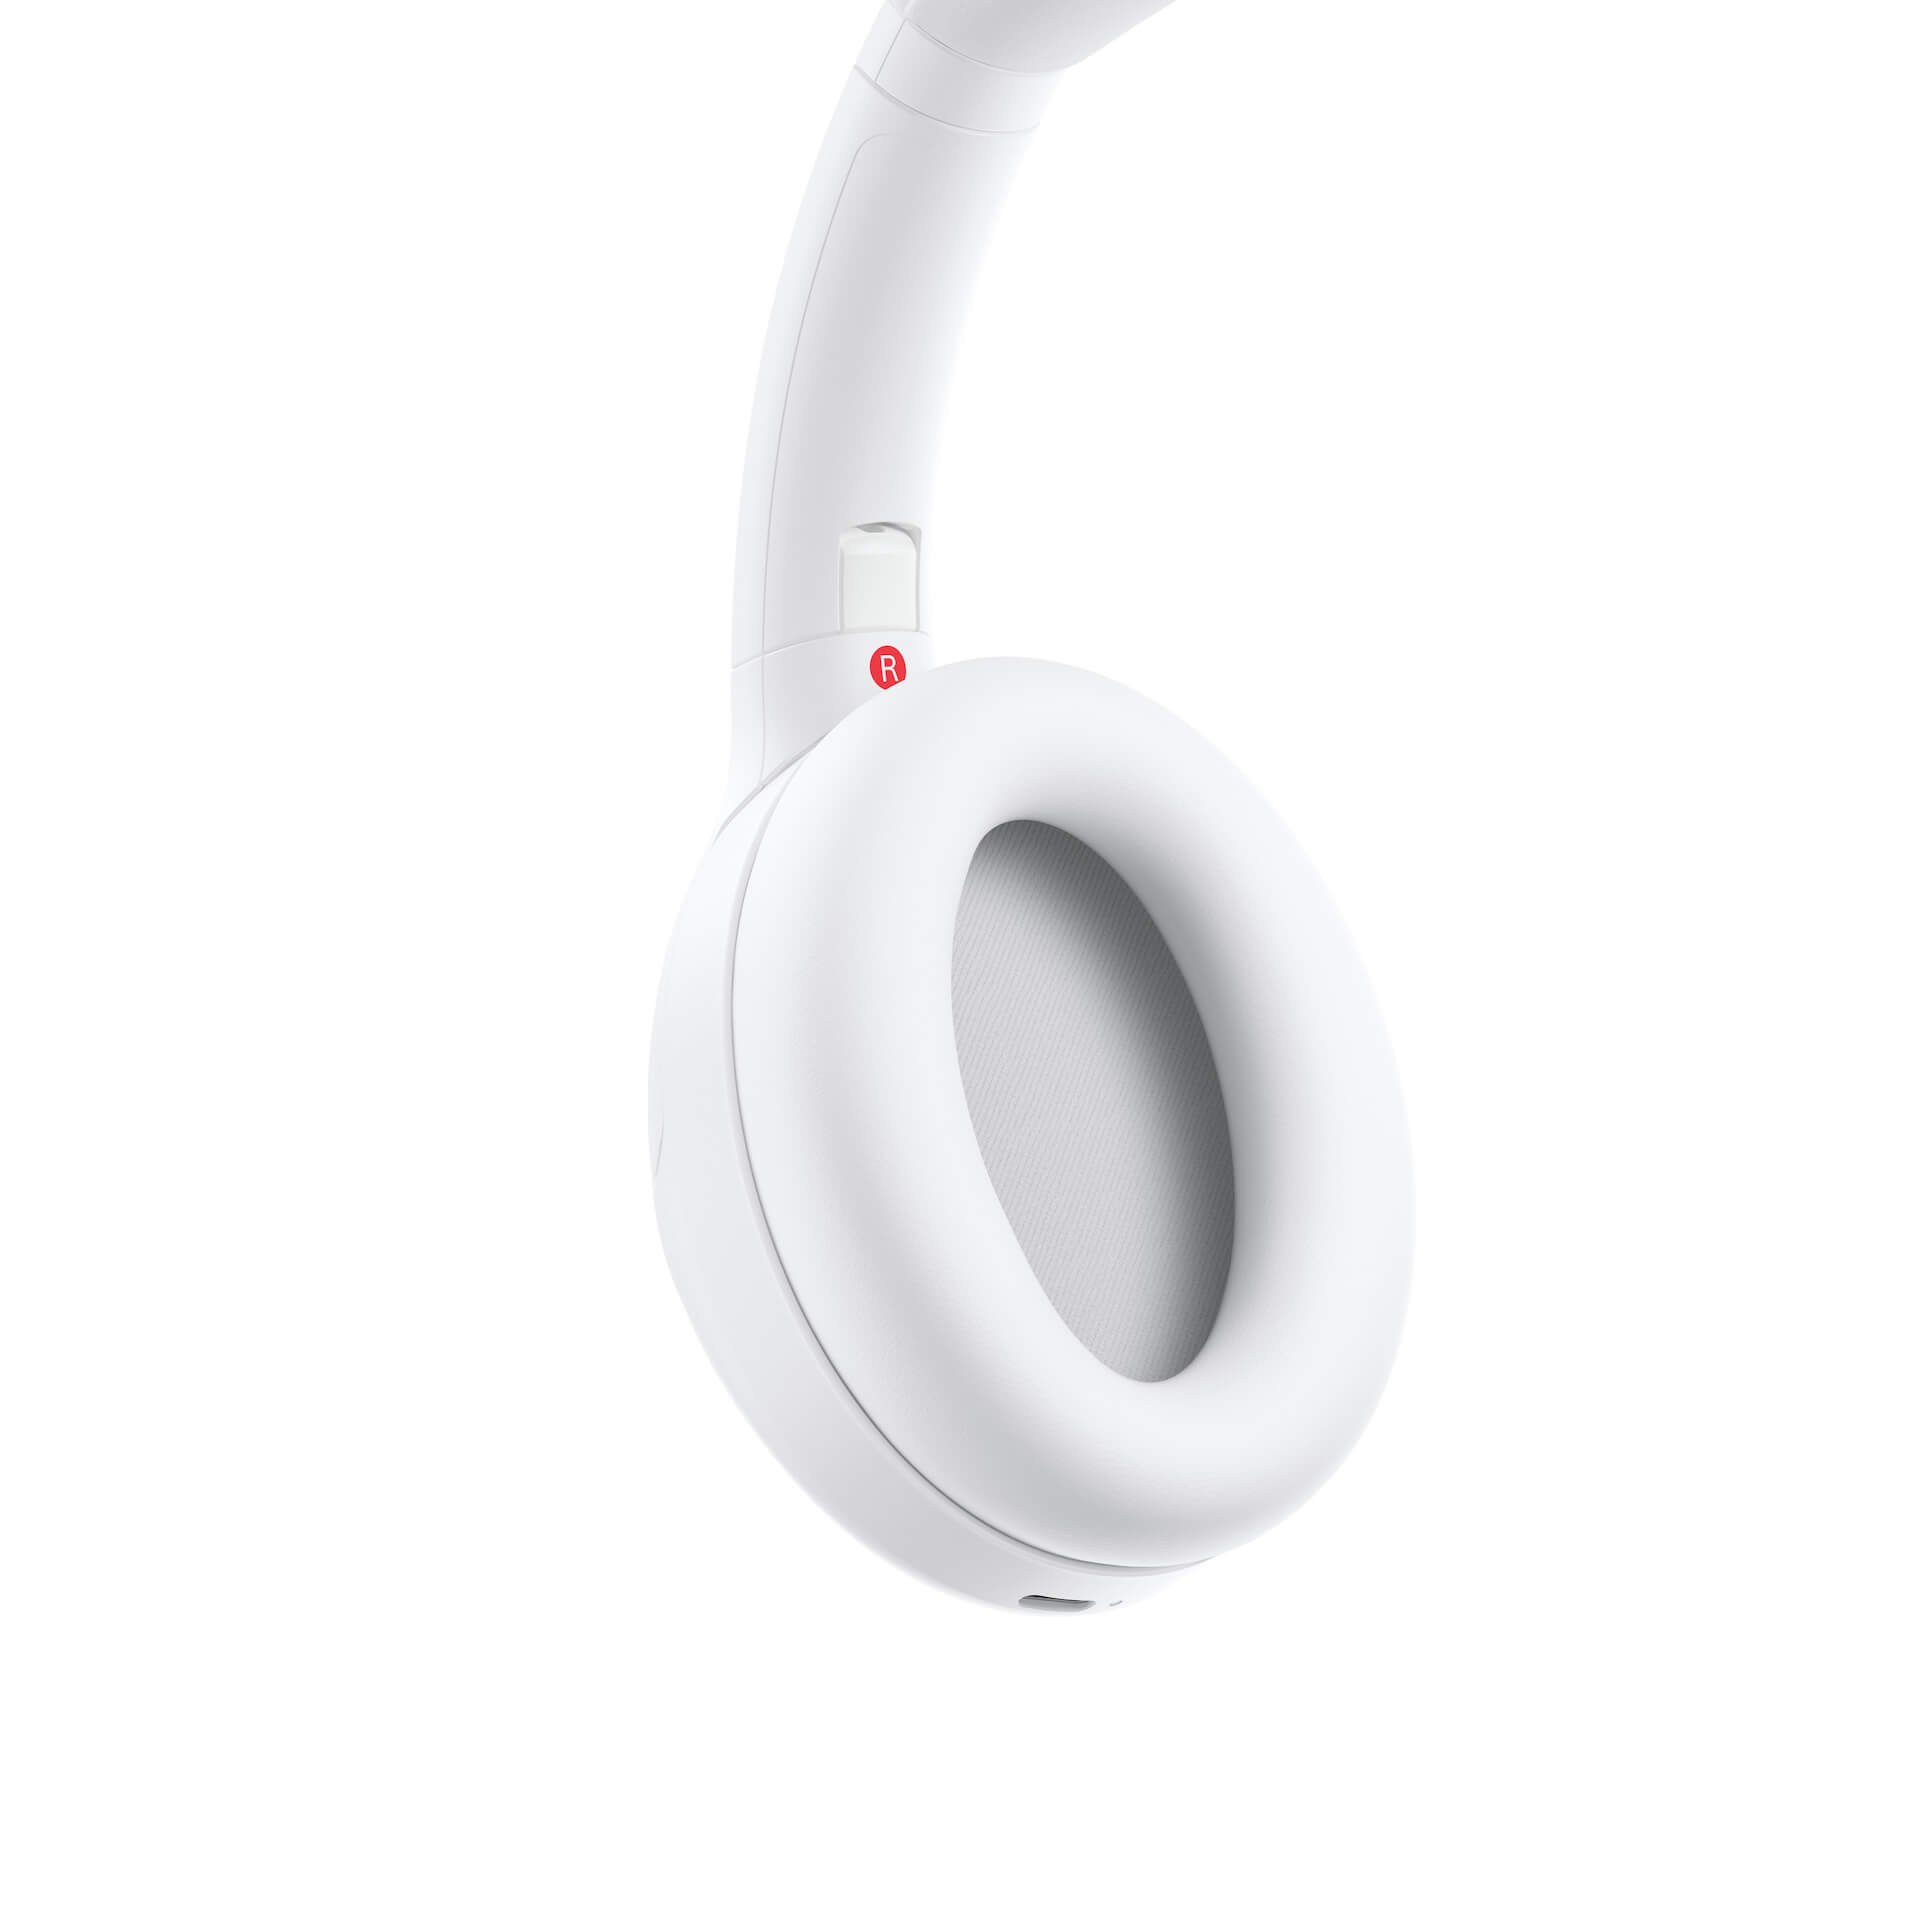 ソニーの大人気ノイズキャンセリングヘッドホン『WH-1000XM4』に限定カラーのサイレントホワイトが登場！LiSAを起用したKVも公開 tech210420_sony_headphone_7